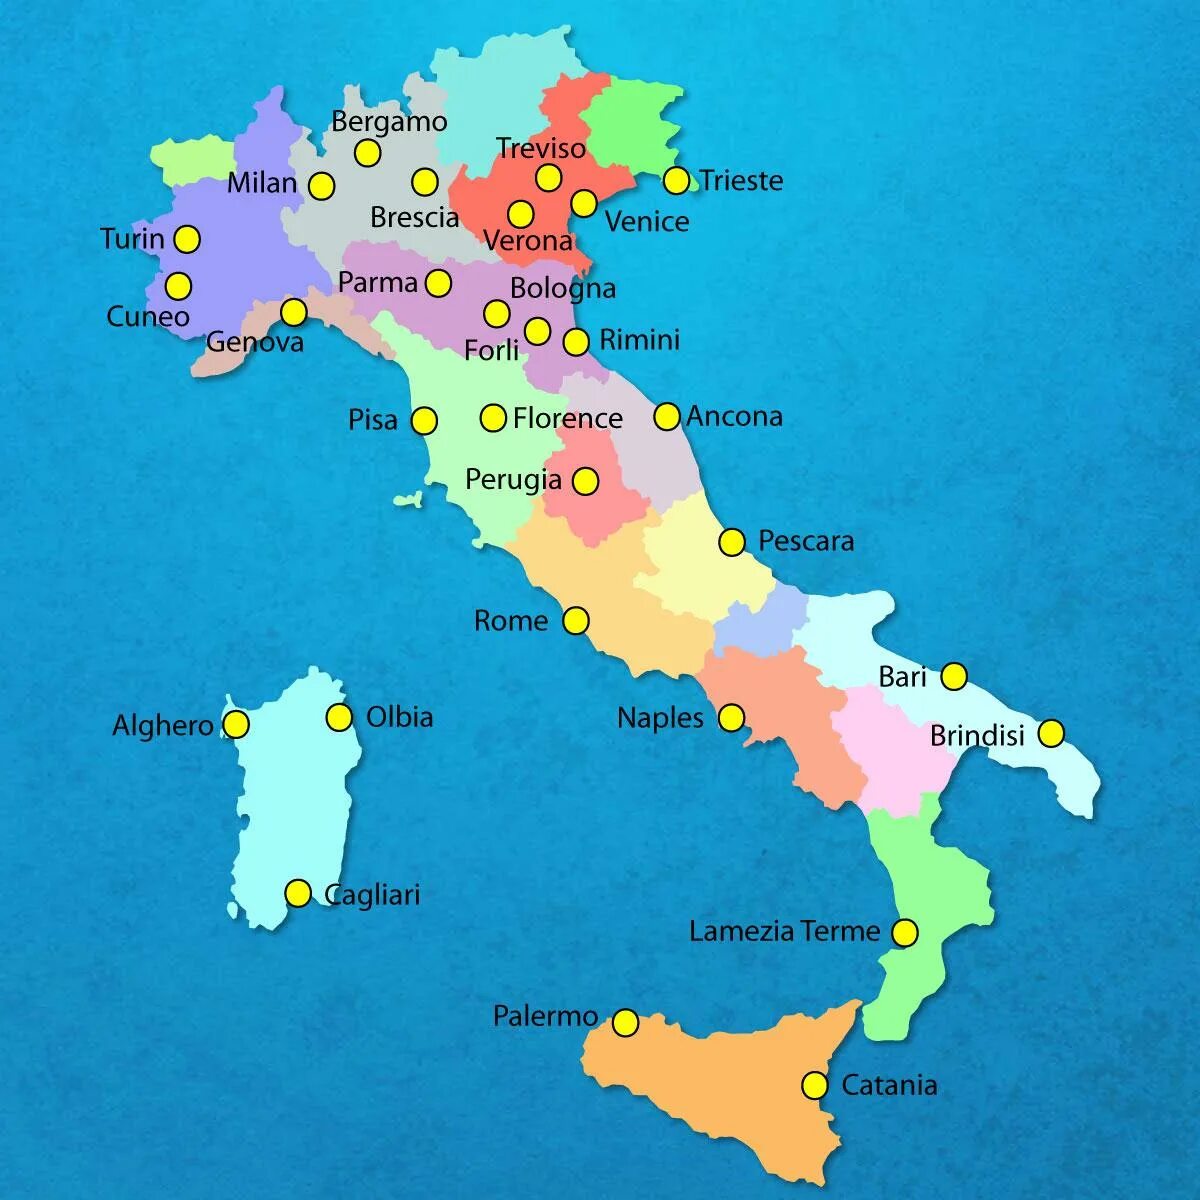 Италия страна на карте. Международные аэропорты Италии на карте Италии. Аэропорты Италии на карте. Аэропорты Италии на карте Италии. Карта аэропортов Италии с городами.